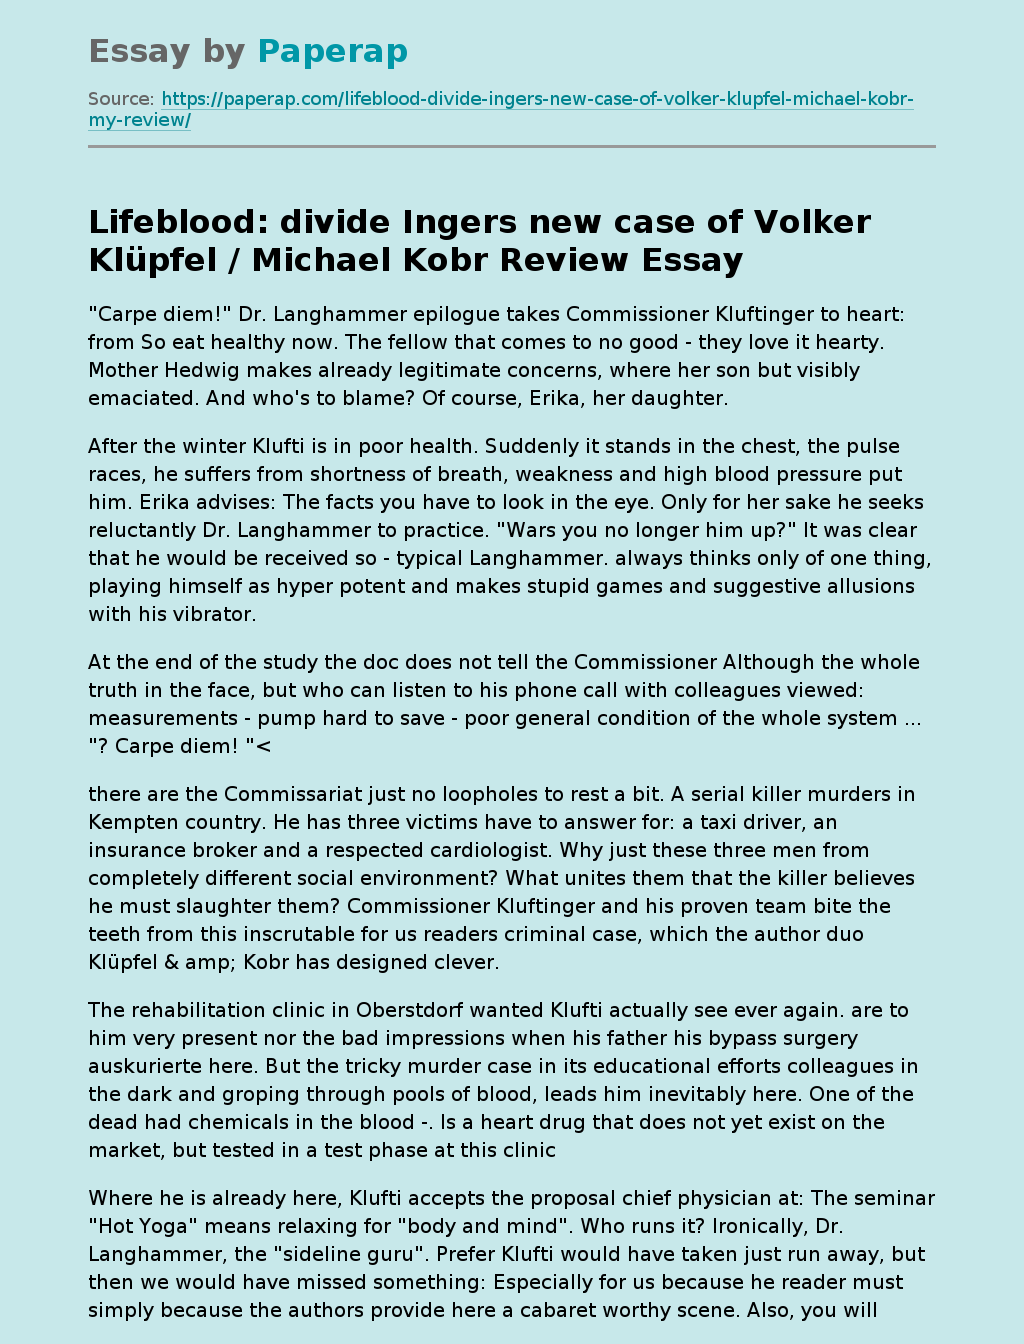 Lifeblood: divide Ingers new case of Volker Klüpfel / Michael Kobr Review